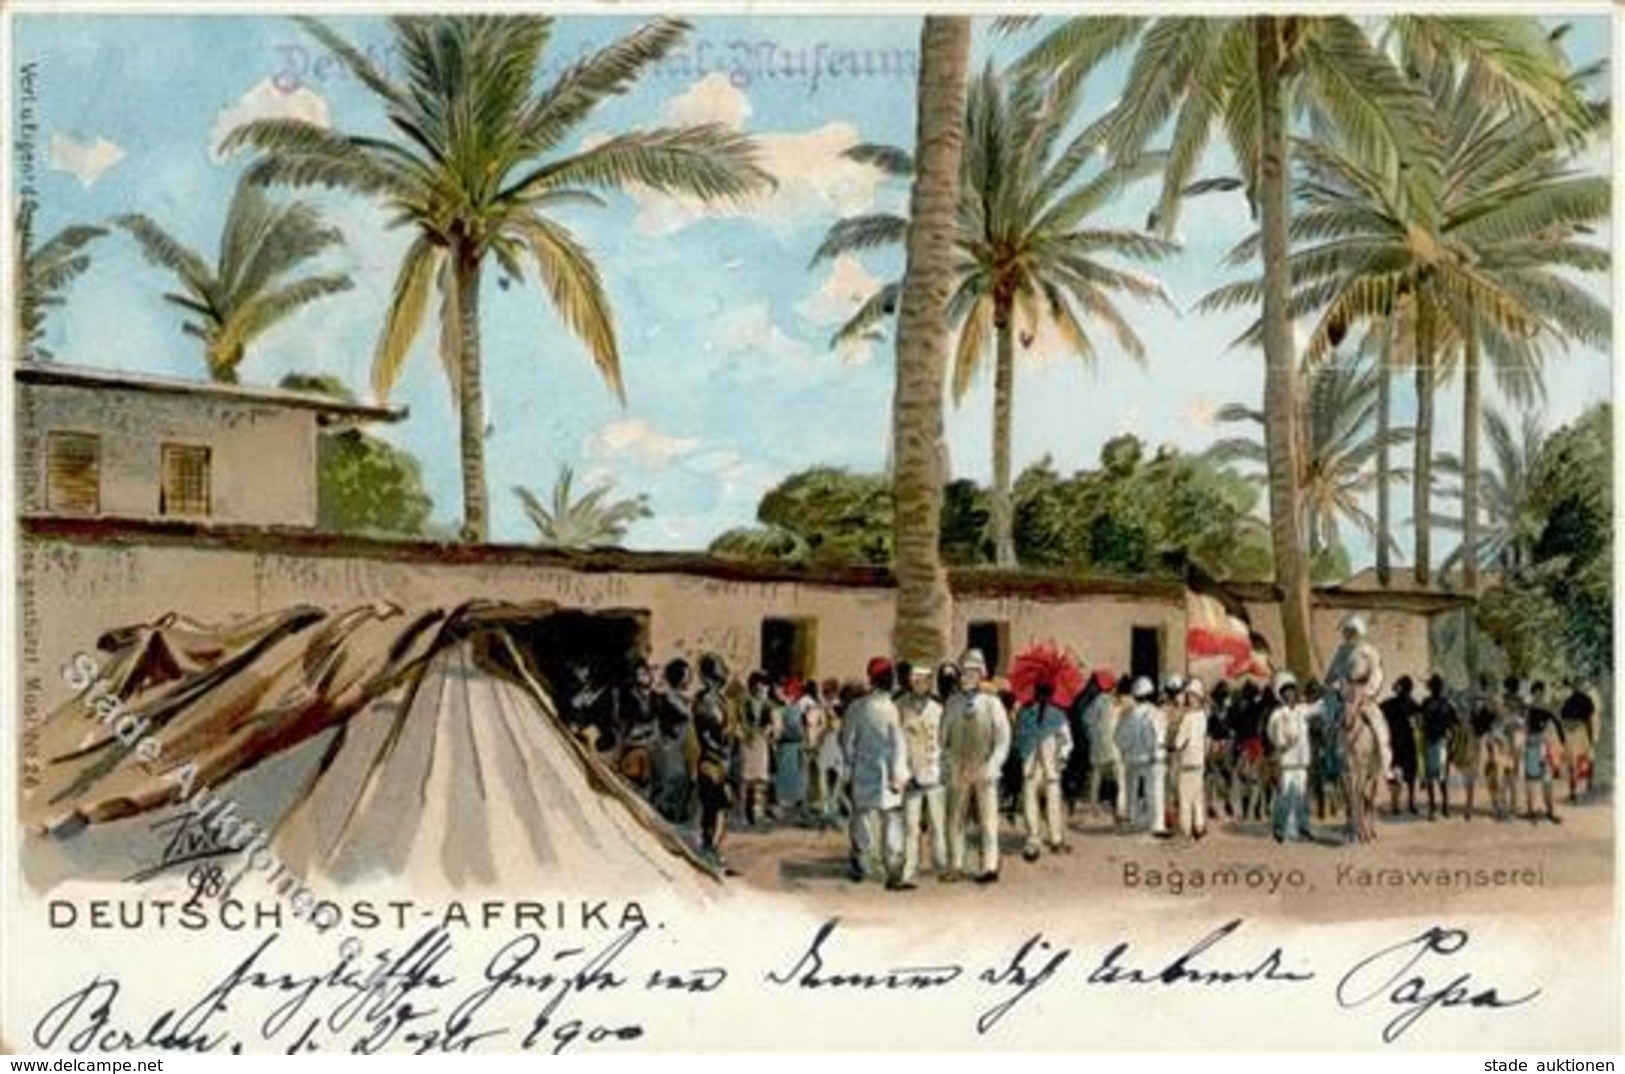 Kolonien Deutsch Ostafrika Bagamoyo Karawanserei 1900 I-II Colonies - Africa